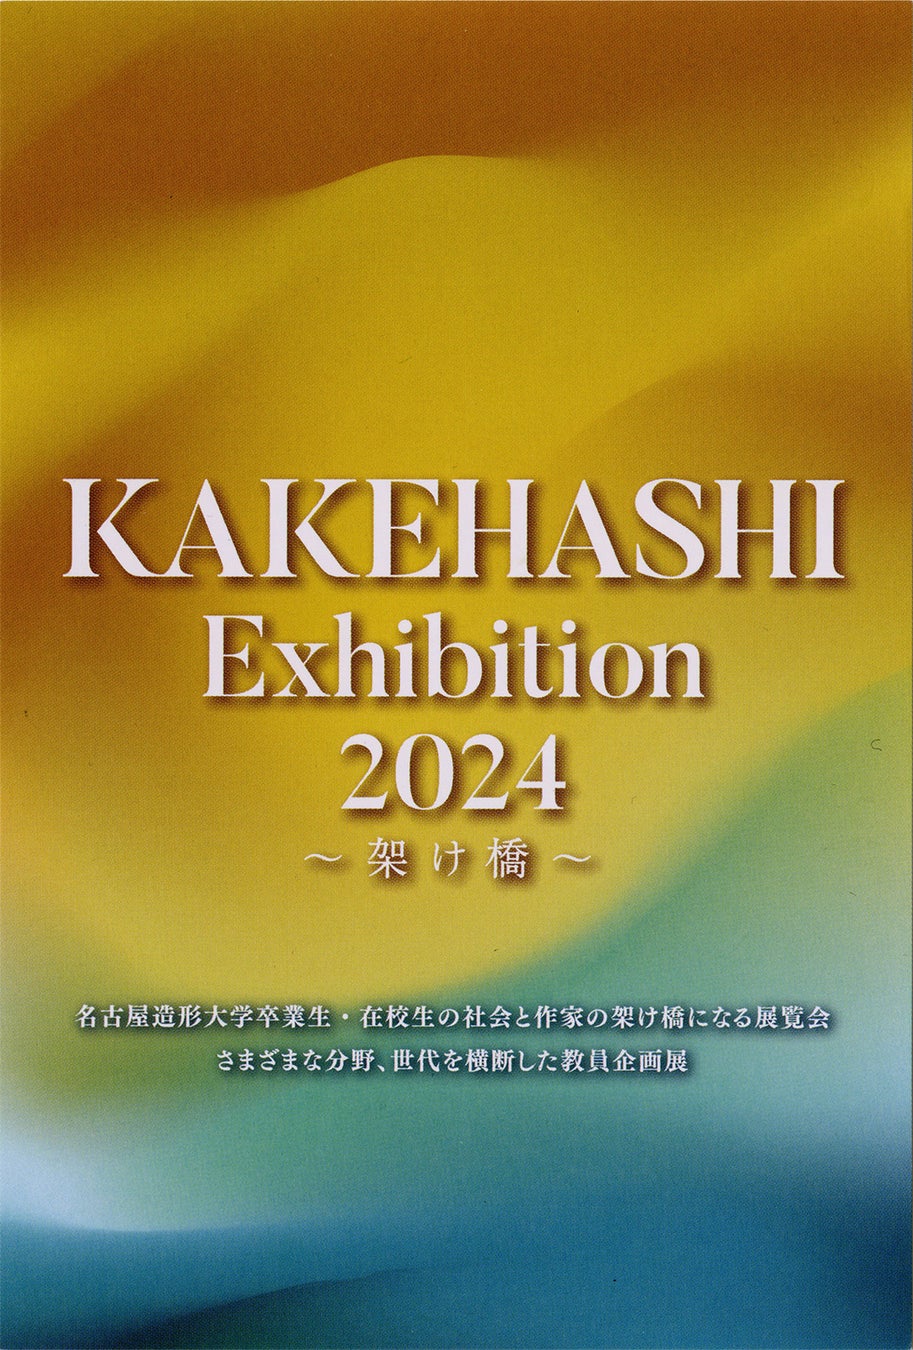 【名古屋造形大学】KAKEHASHI Exhibition 2024～架け橋～を開催します